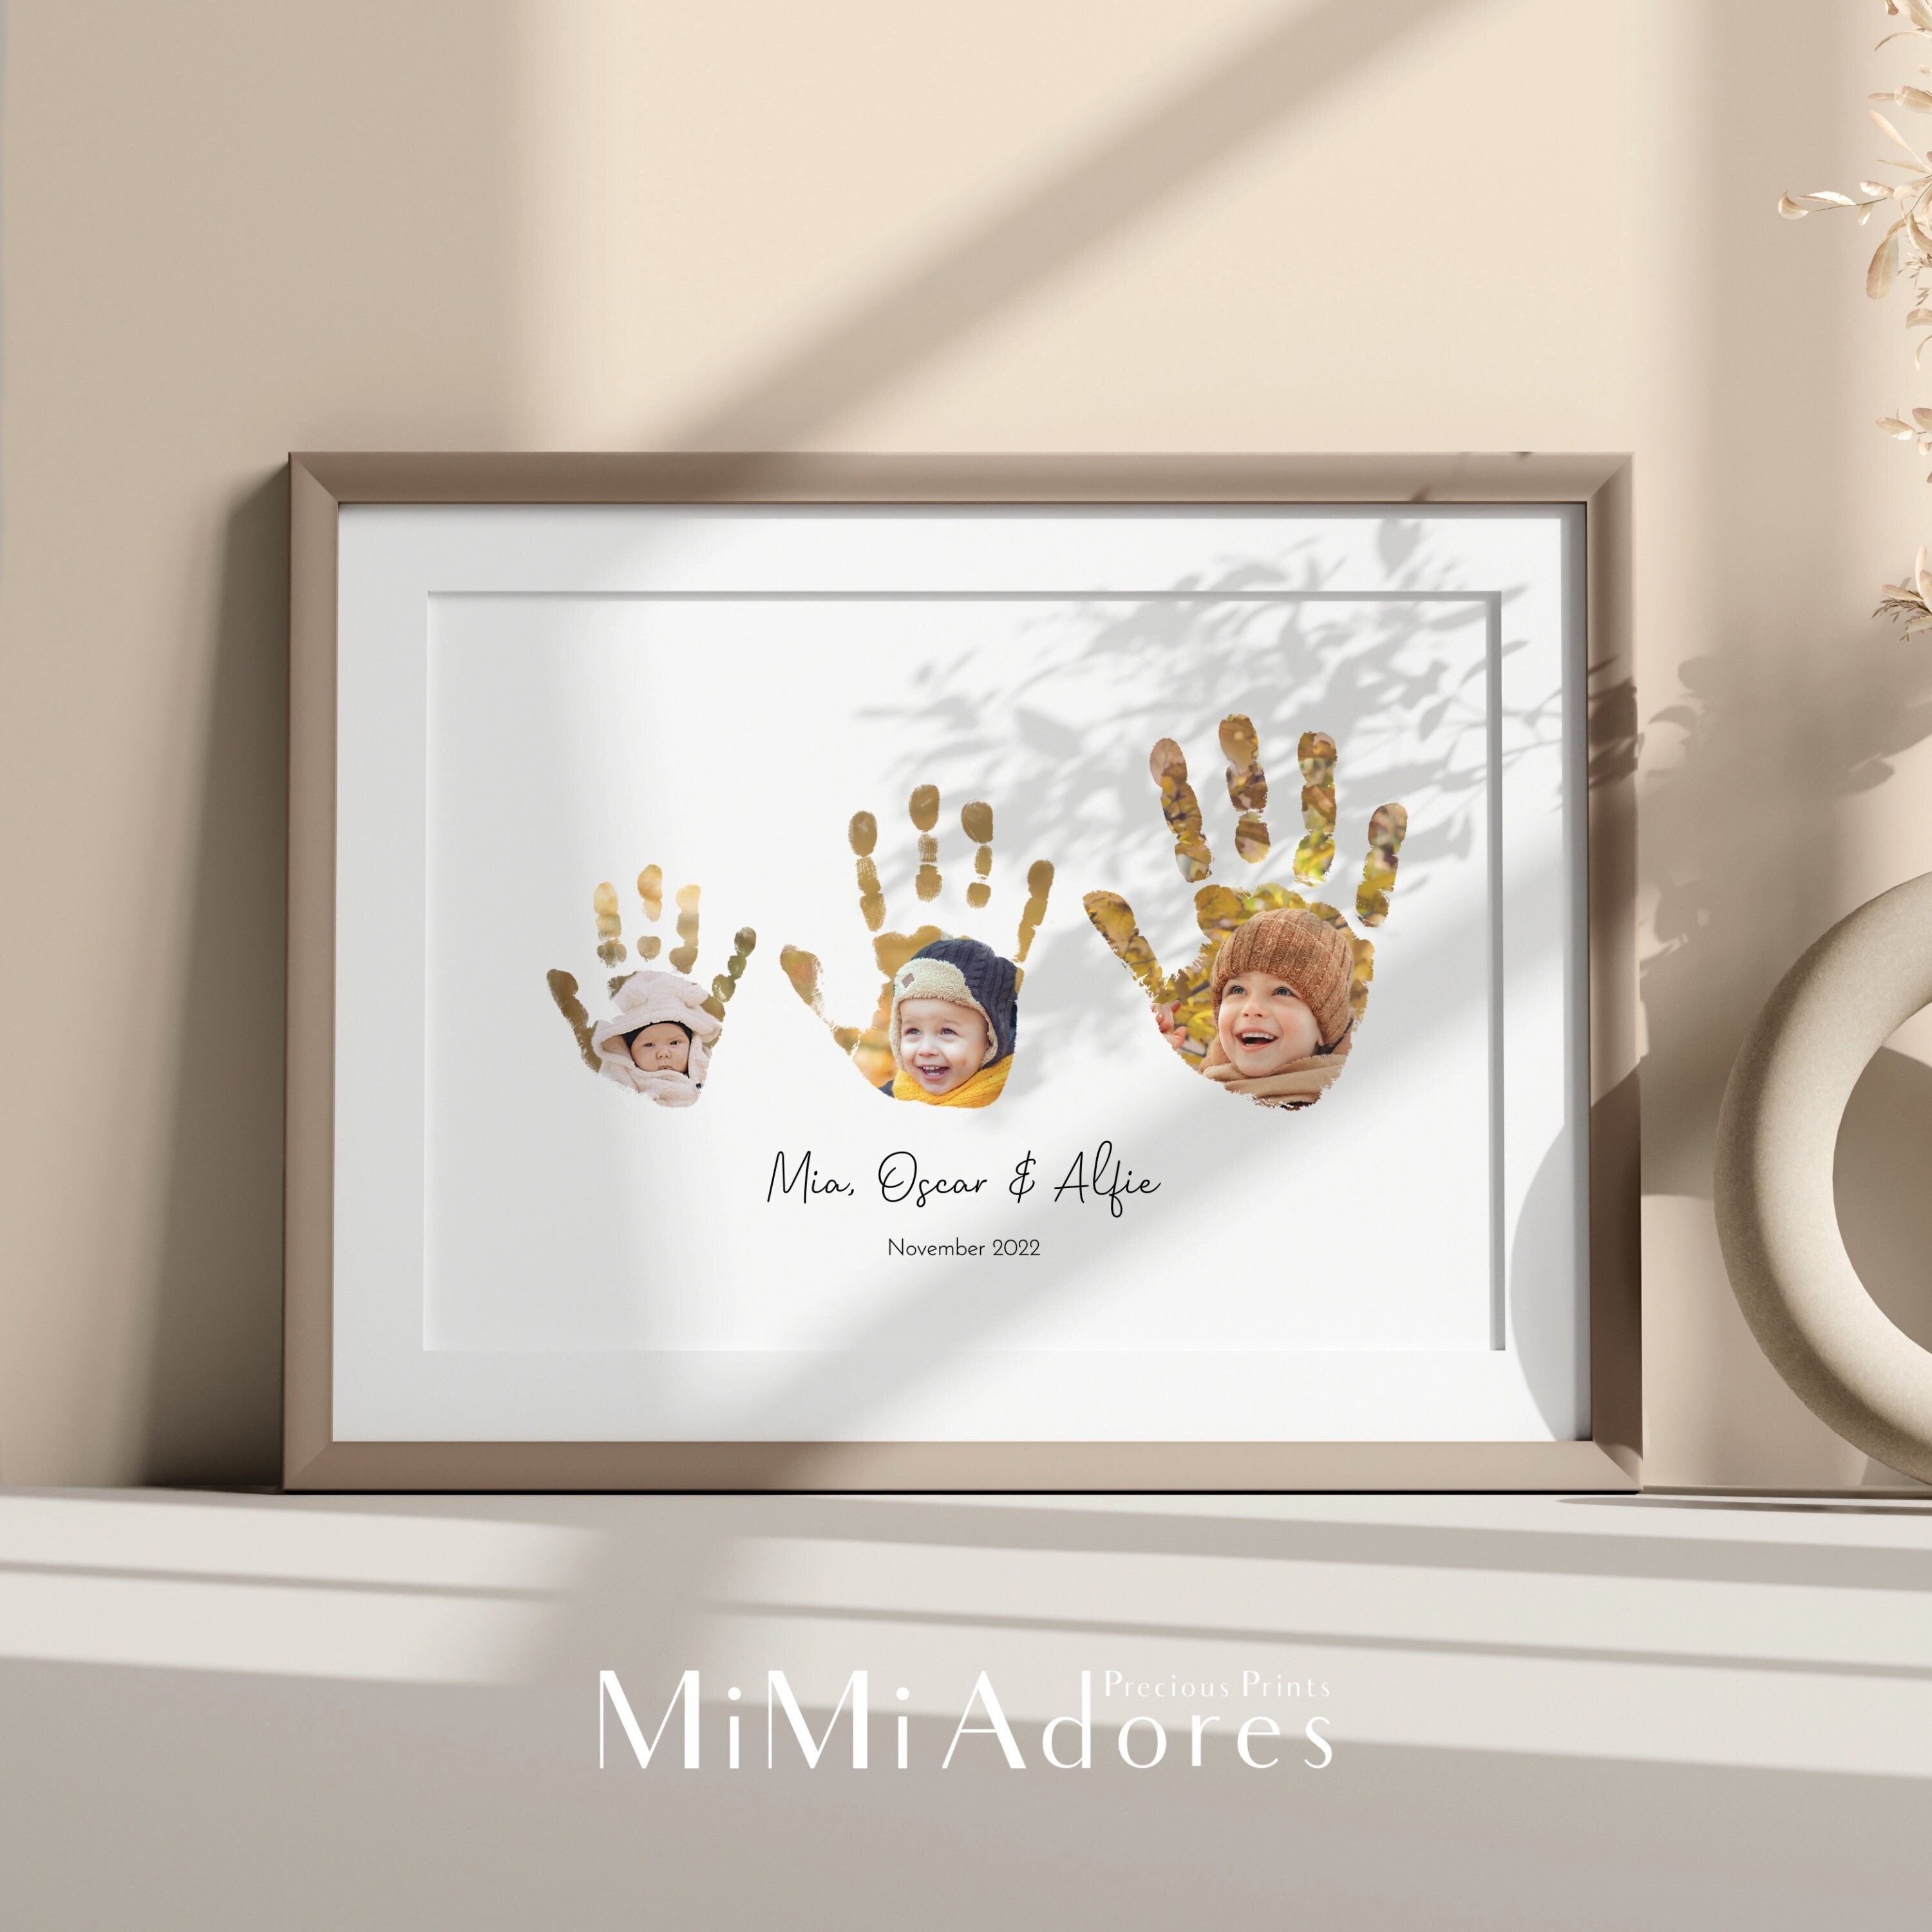 Mimi Adores Family Handprint Art in Monochrome Watercolour Custom